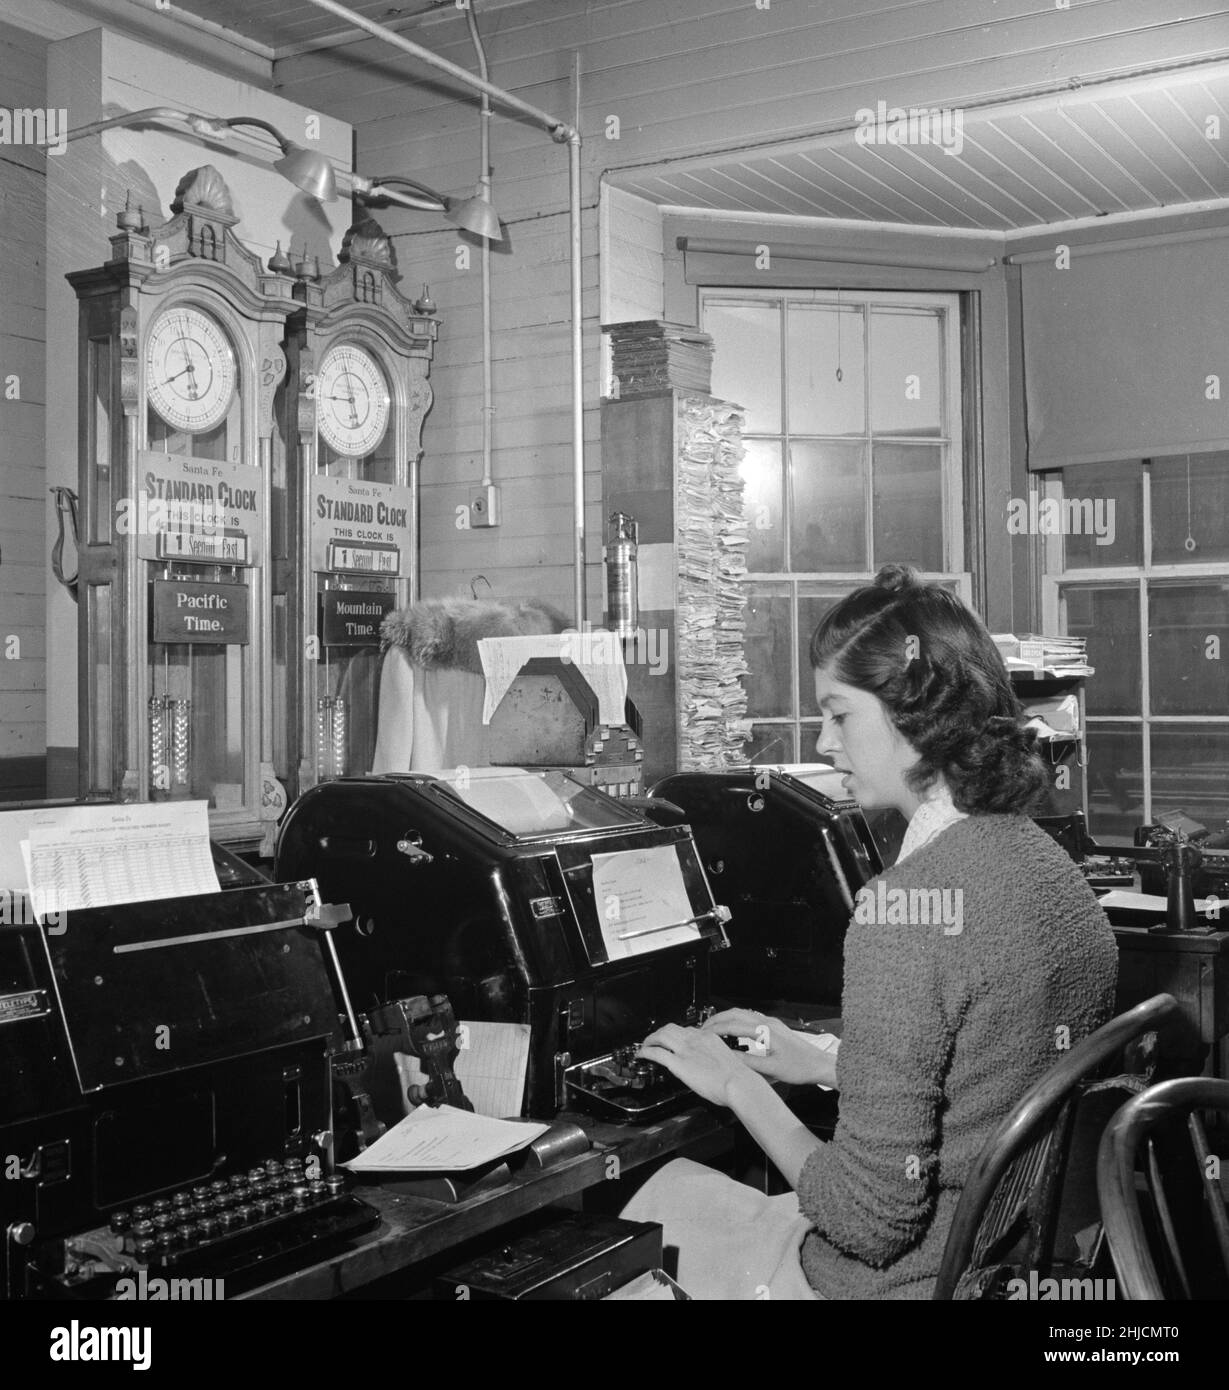 TeleType-Betreiber im Telegrafenbüro der Atchison, Topeka und Santa Fe Railroad. Die Zeit hier ändert sich von der Berg- zur pazifischen Zeit. Fotografiert von Jack Delano, März 1943. Seligman, Arizona. Stockfoto